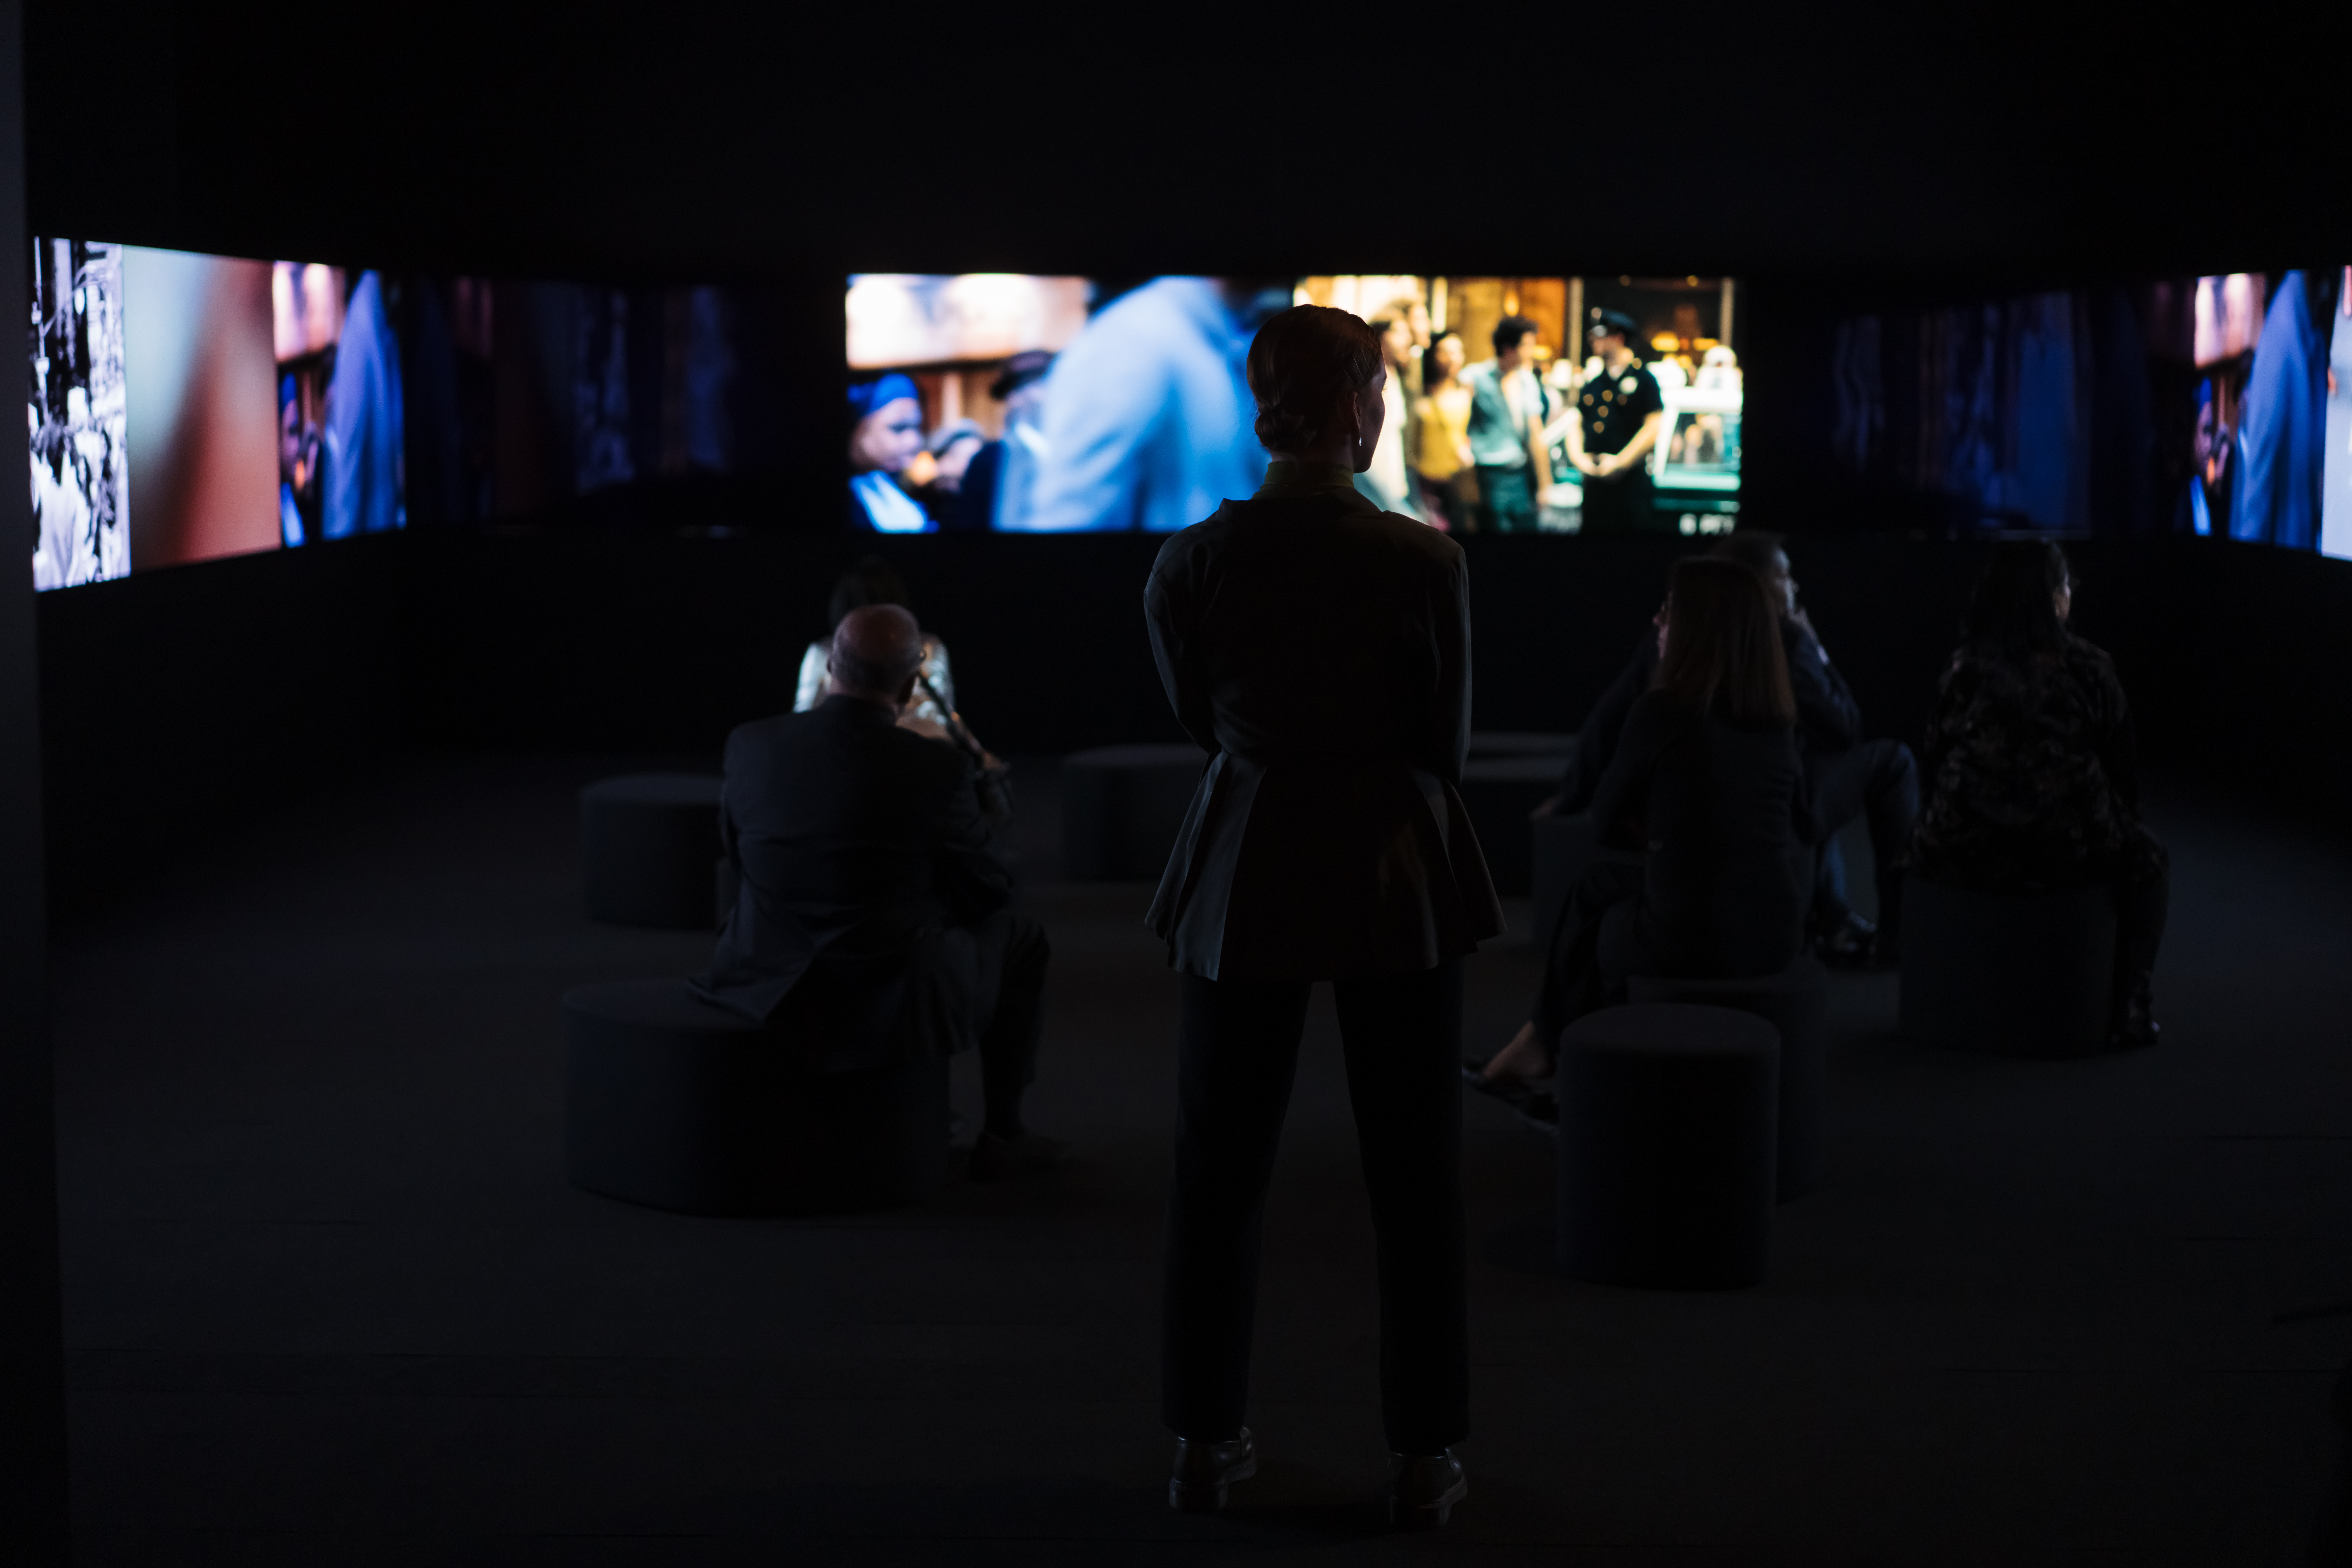 La silueta de una mujer parada frente a varias pantallas que muestran imágenes borrosas de películas.